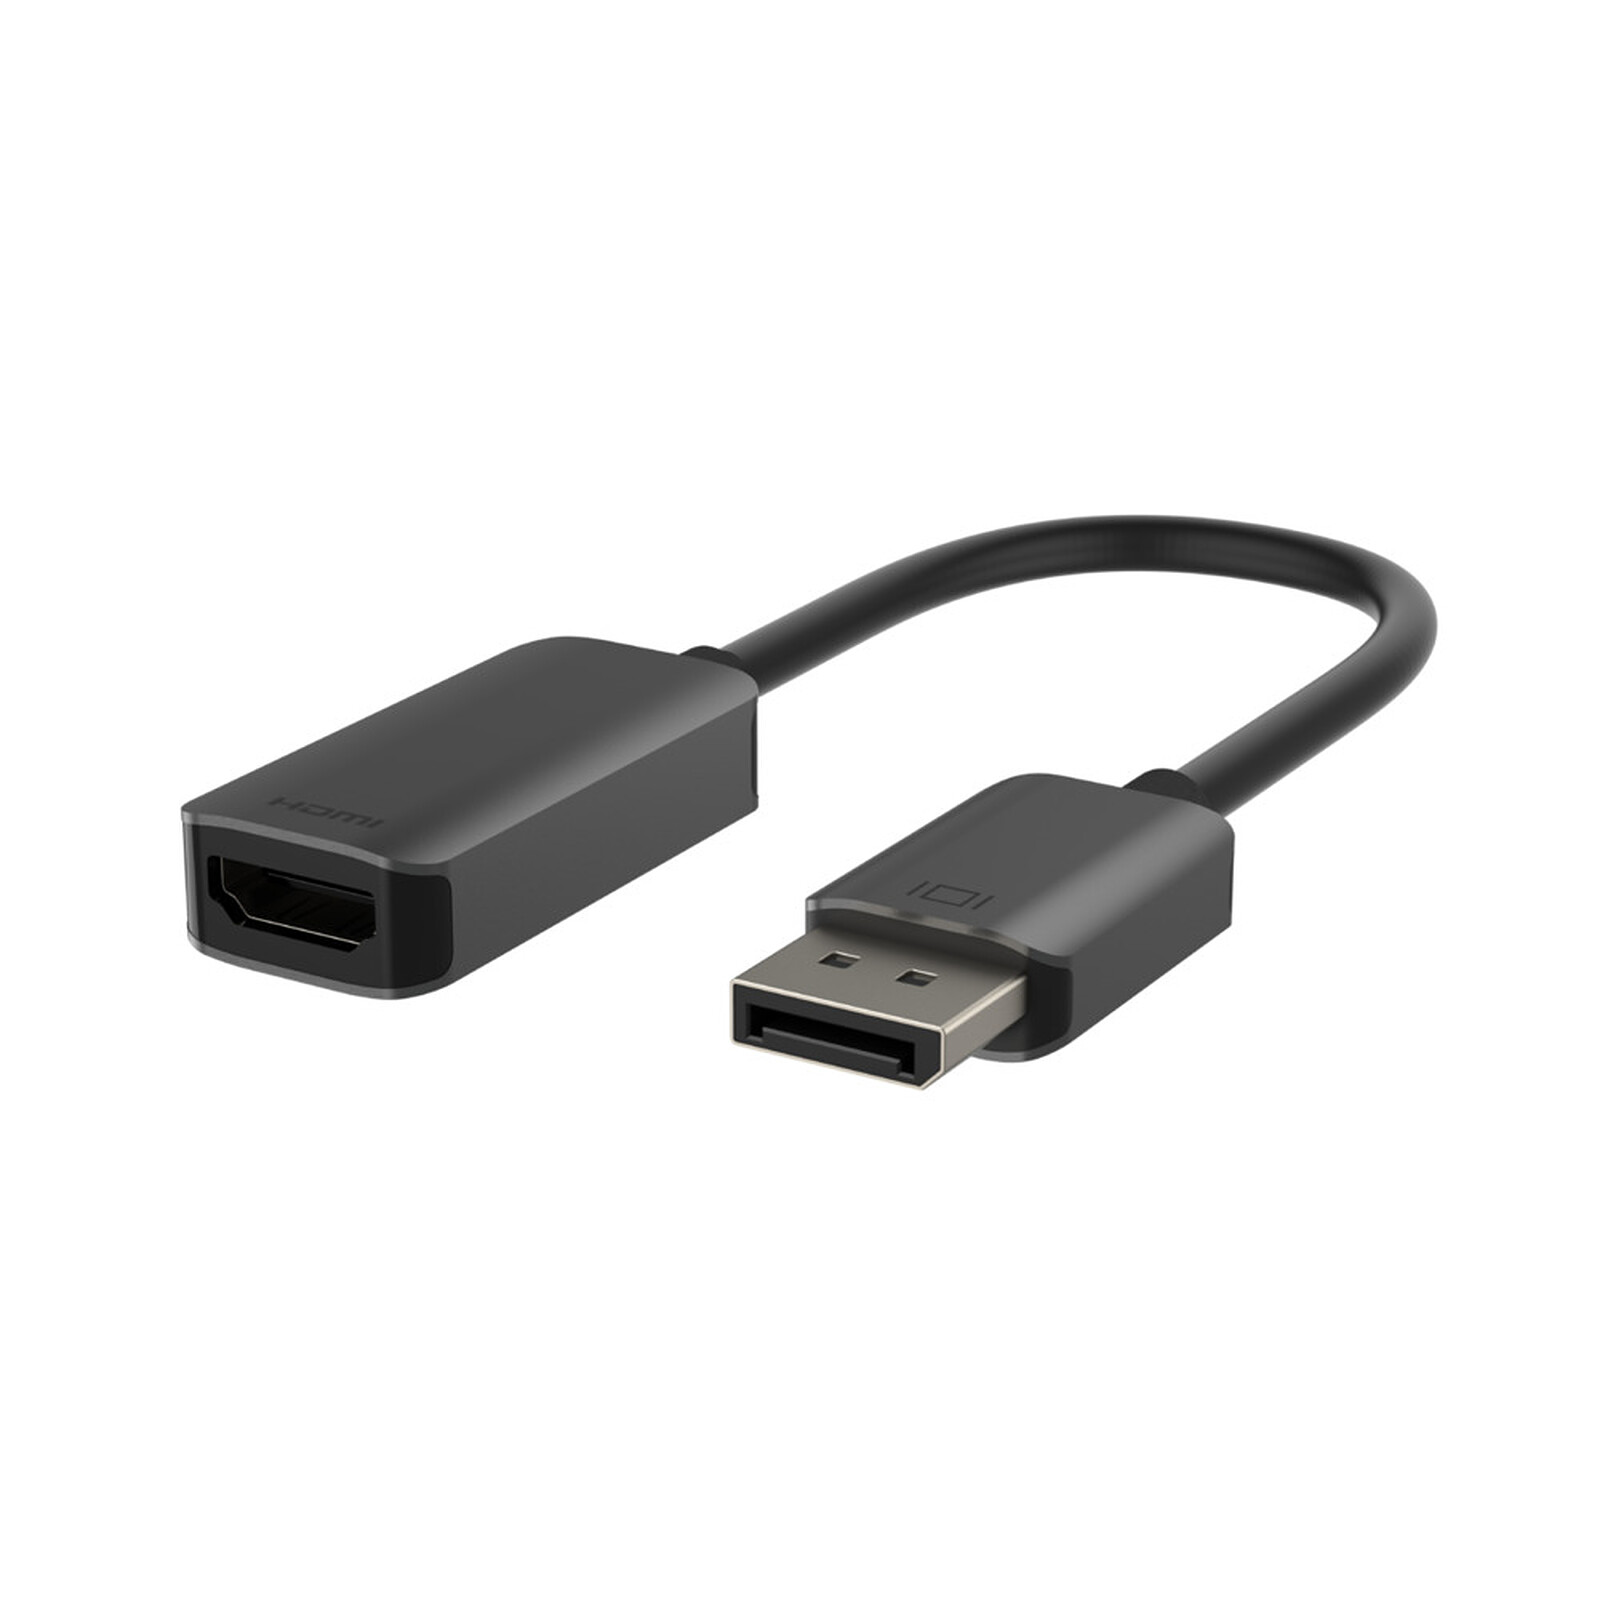 Cable Activo DisplayPort 1.2 a HDMI 2,0a 4k@60hz - UPTab